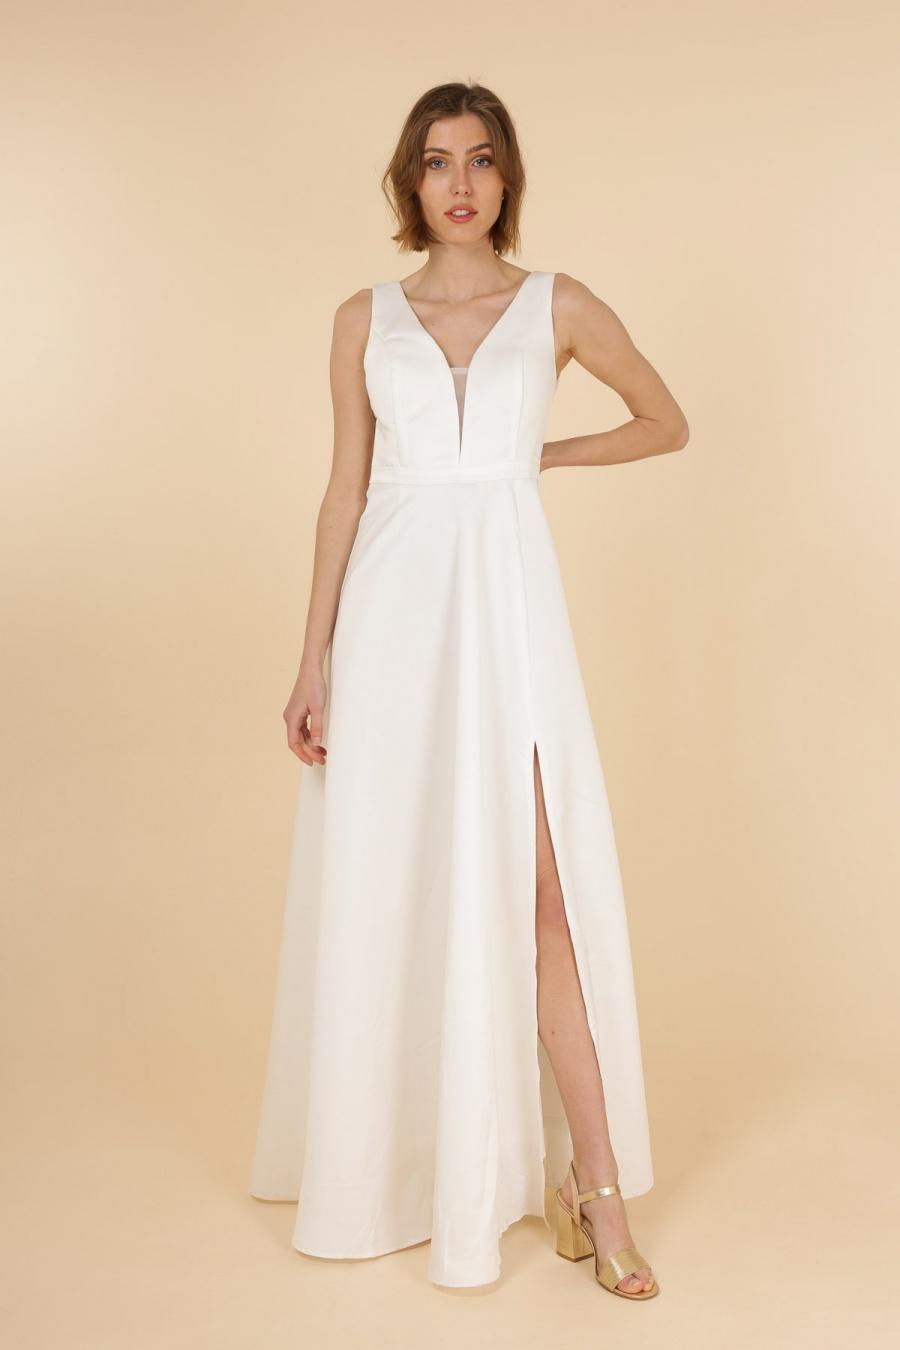 Robes longues Femme Blanc CHARM'S 8762 #c Efashion Paris